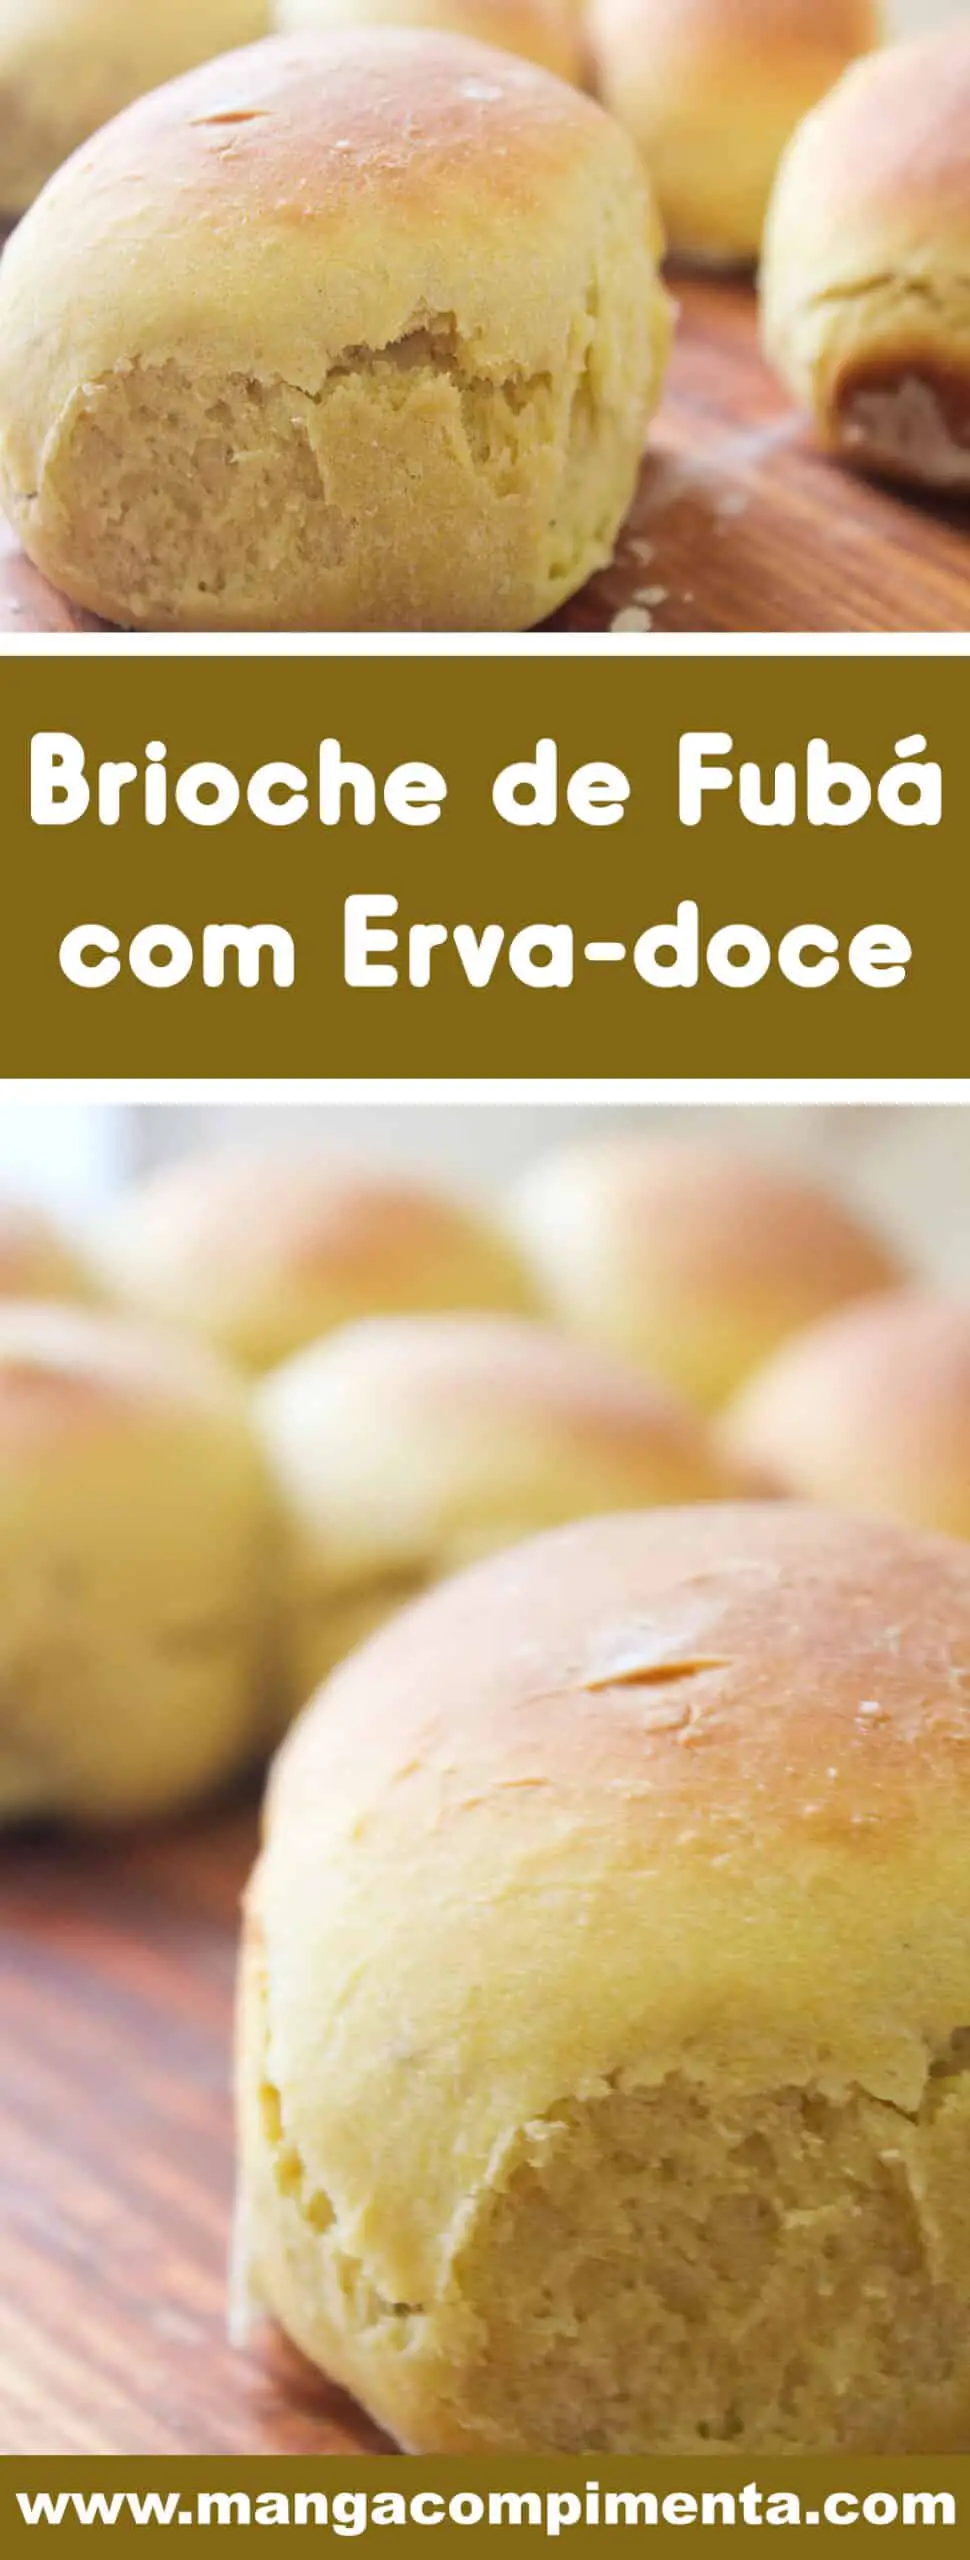 Receita de Pão Brioche de Fubá com Erva-Doce - para um lanche da tarde delicioso com a família!